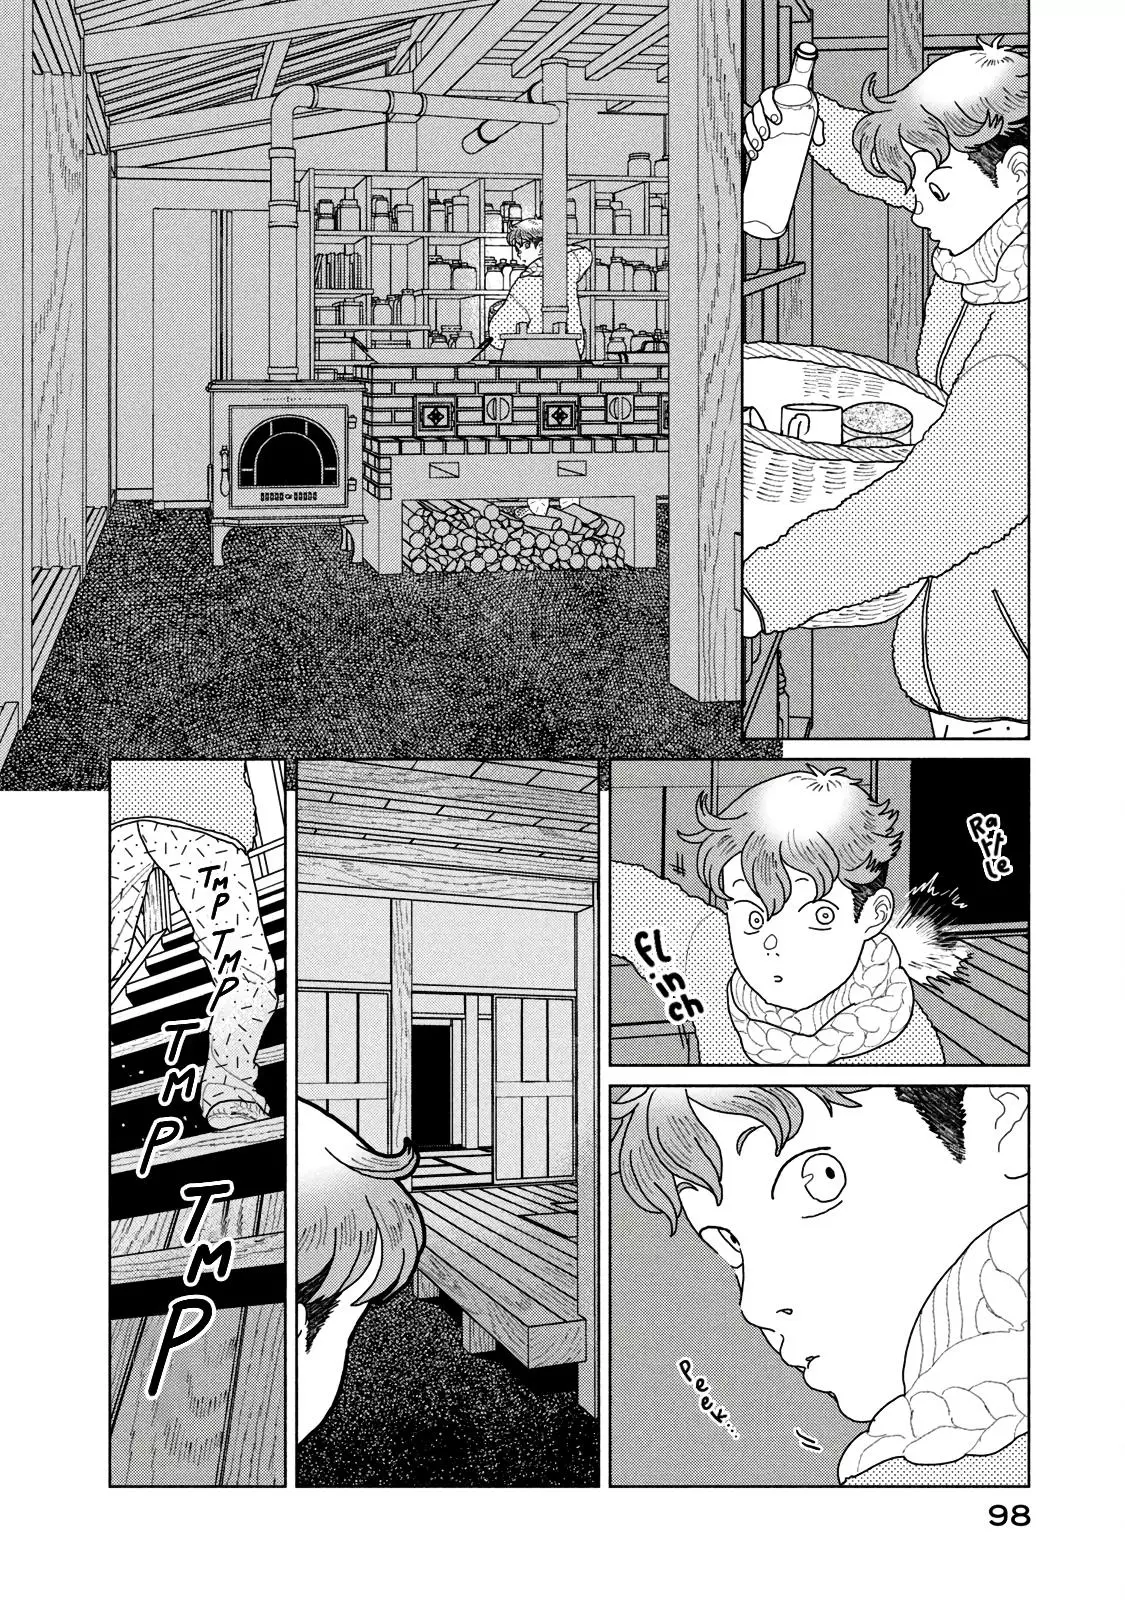 Tengu No Daidokoro - 10 page 19-88223c3c